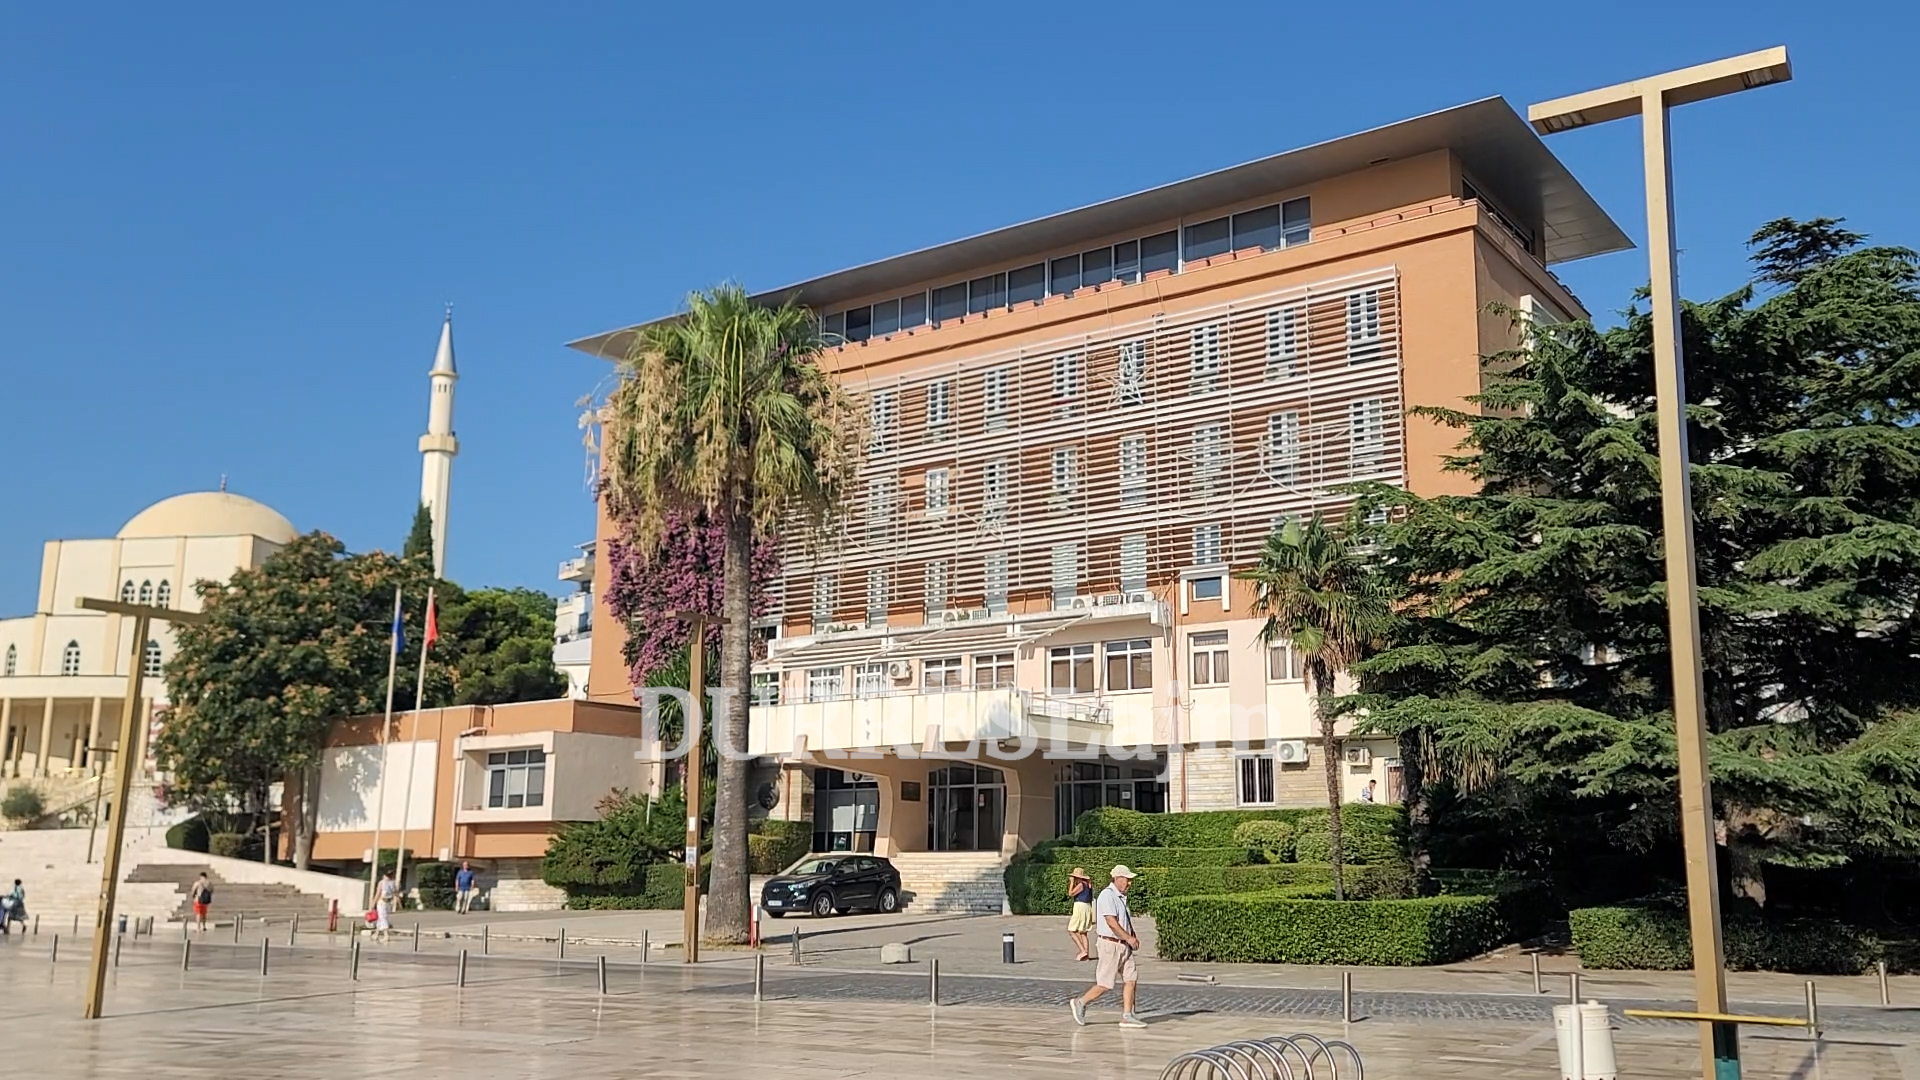 Task Forca Ndërinstitucionale në Durrës liston arritjet e sezonit turistik, por a janë vërtet arritje?! (VIDEO)